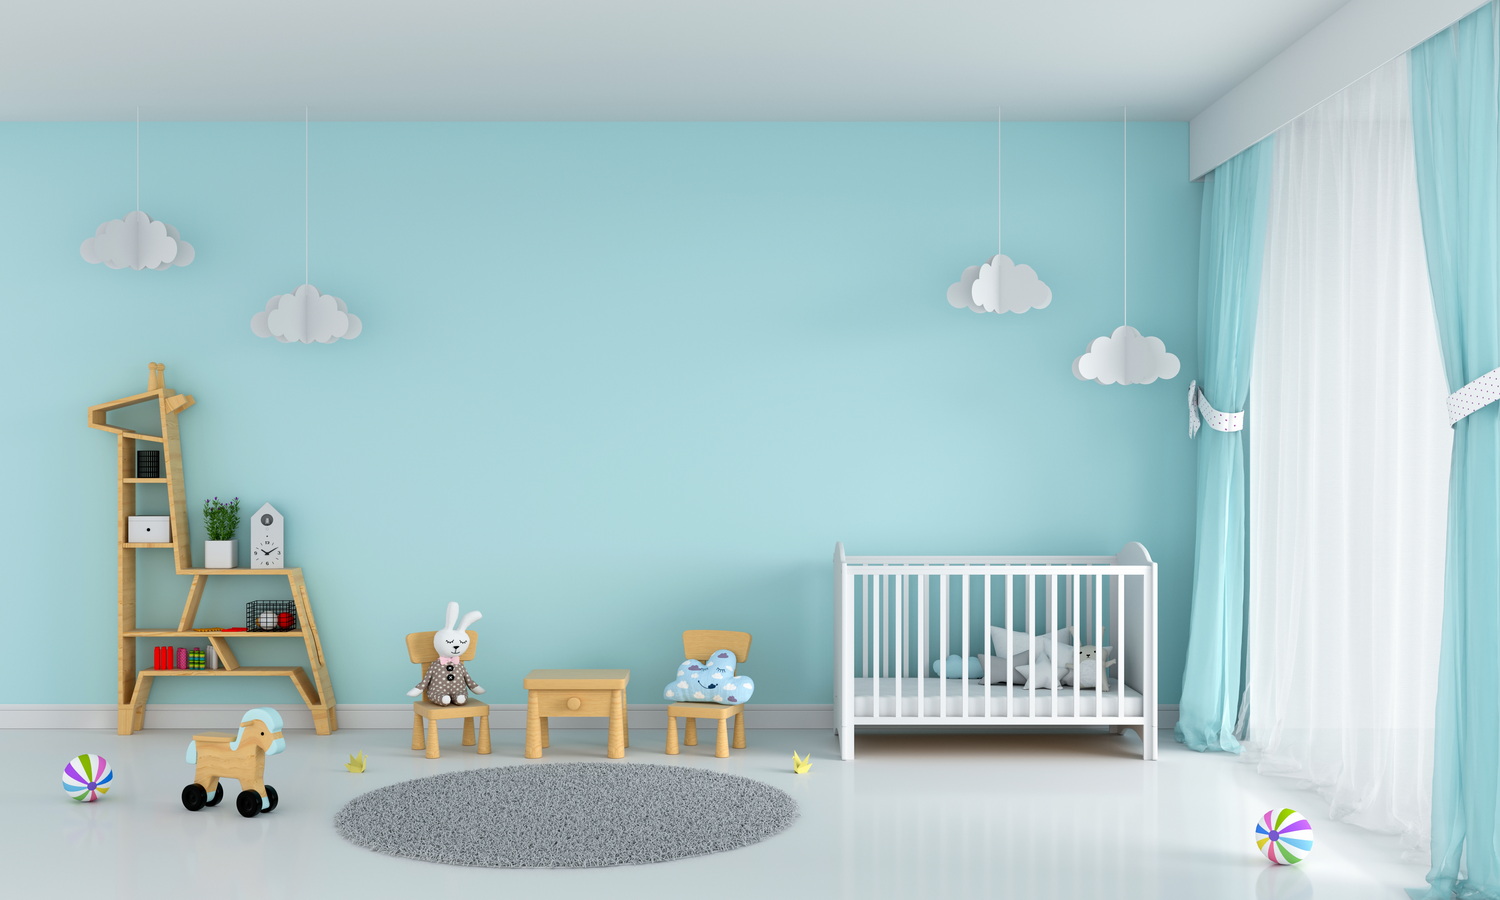 Warna biru muda yang cocok diterapkan pada kamar anak-anak.